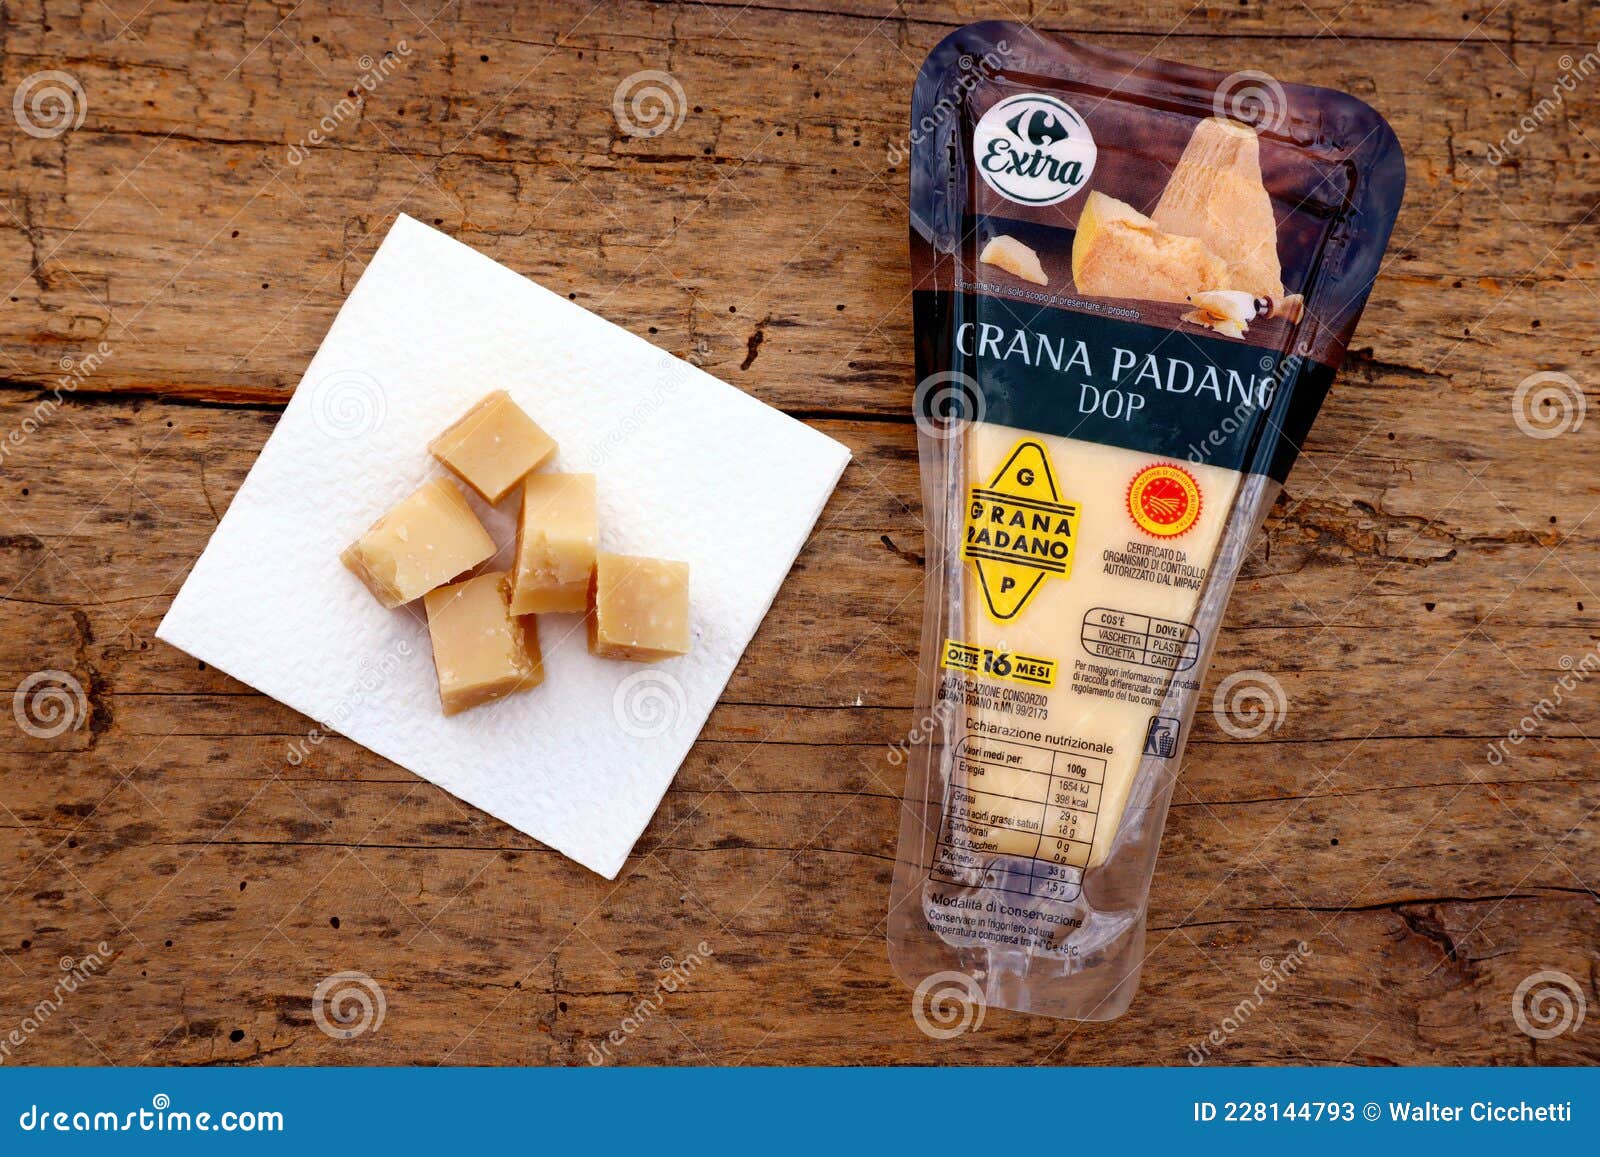 grana: - milky, PADANO Italian 228144793 Stock Image Parmesan of Cheese Photo Sealed GRANA Editorial